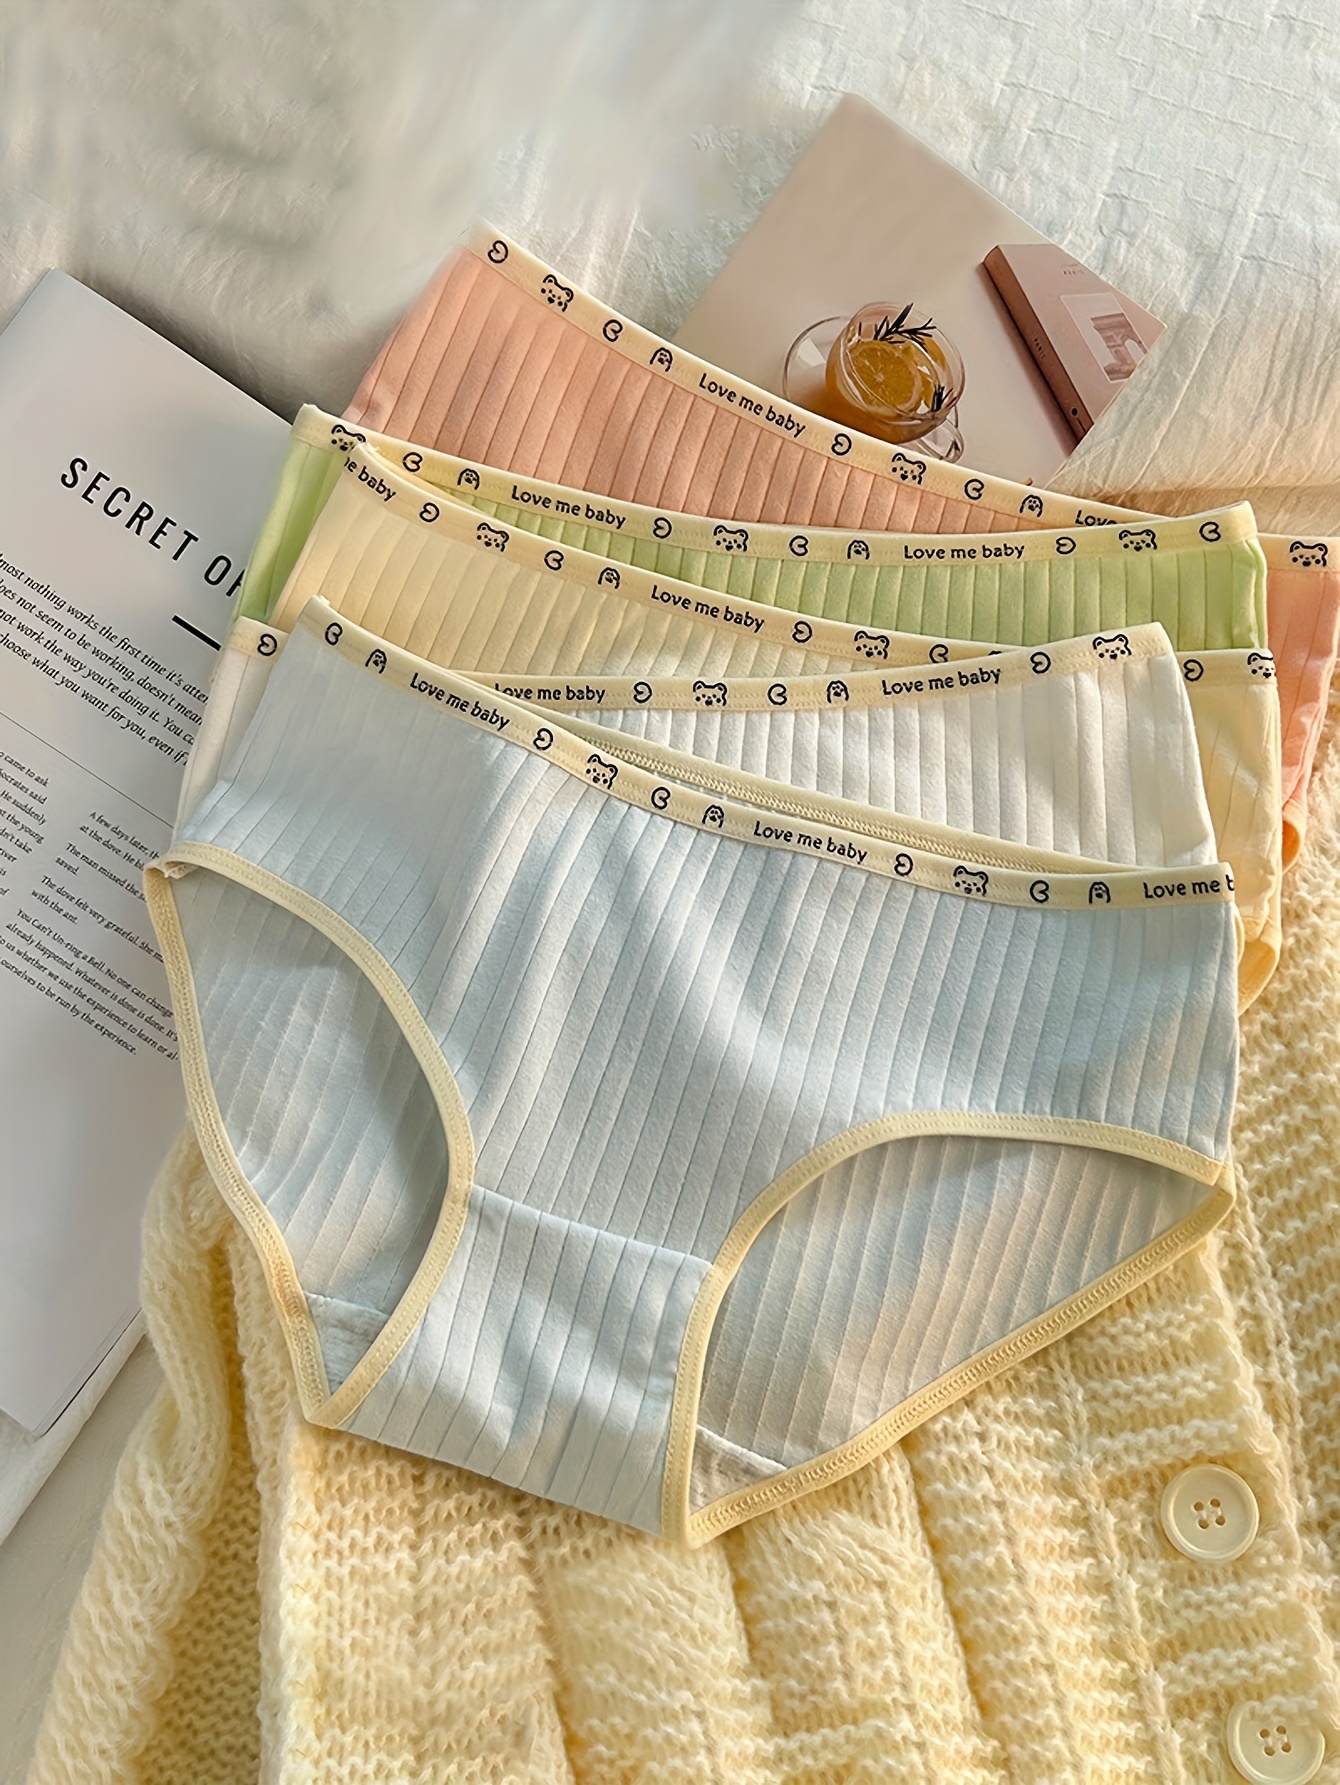 Girls Solid Color Briefs Low Waist Cotton Underwear For 13 - Temu